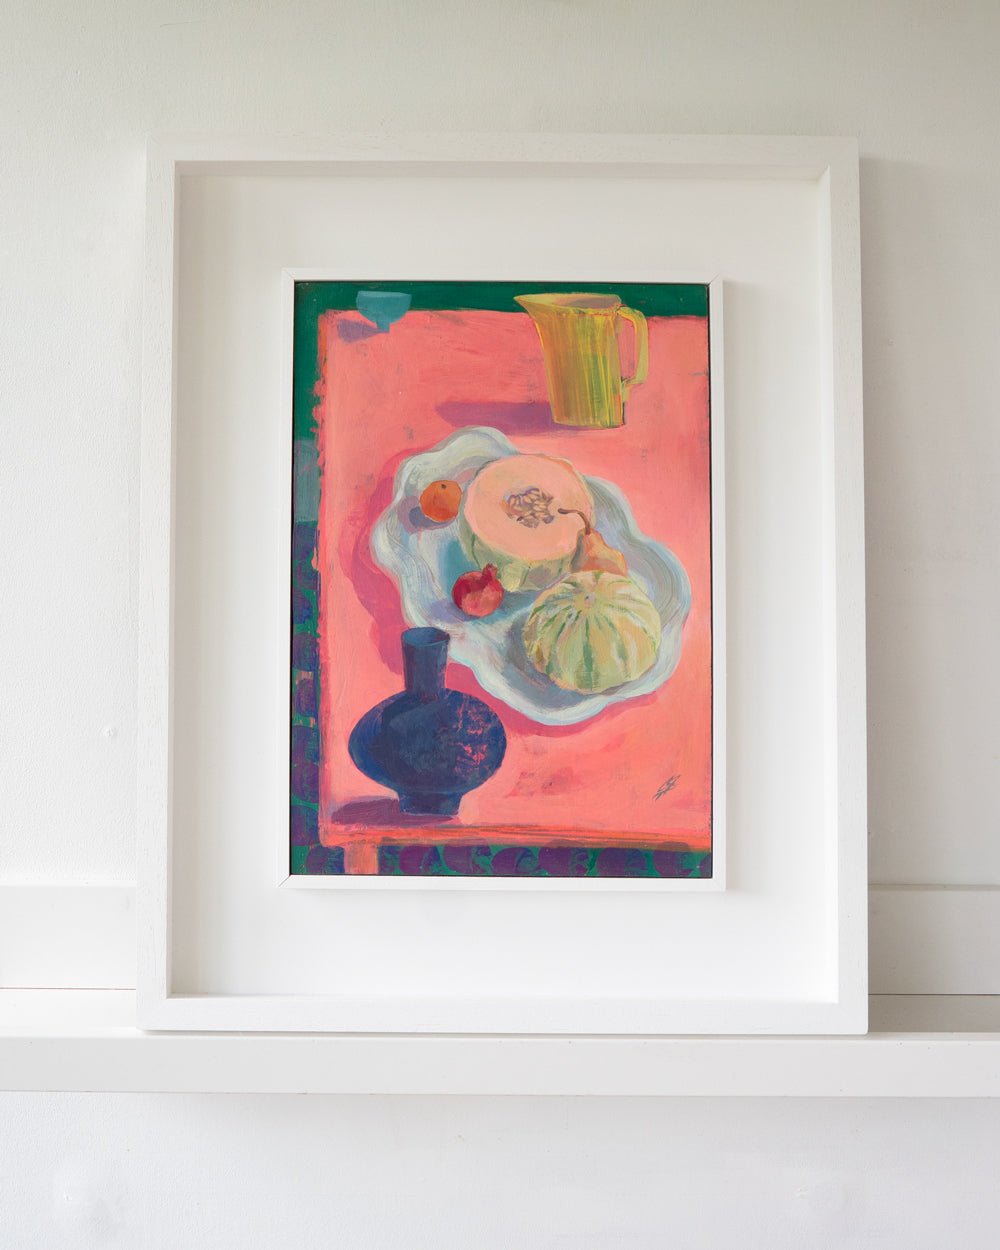 Fruit Platter - a framed still life